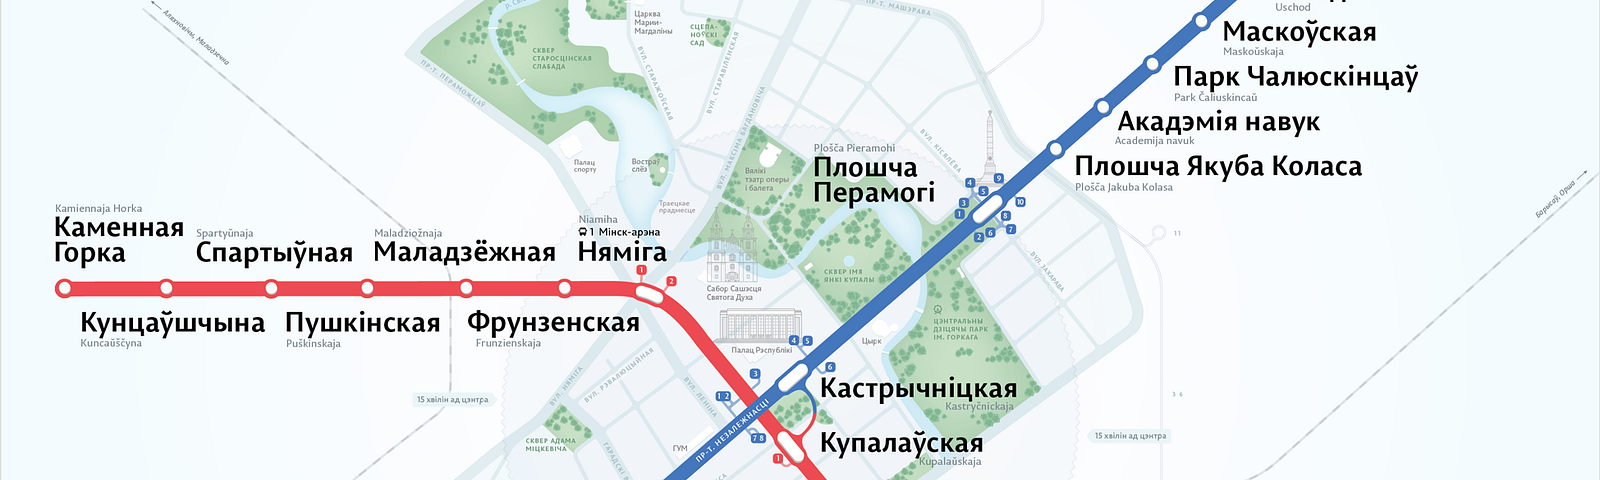 Схема метро минска на русском